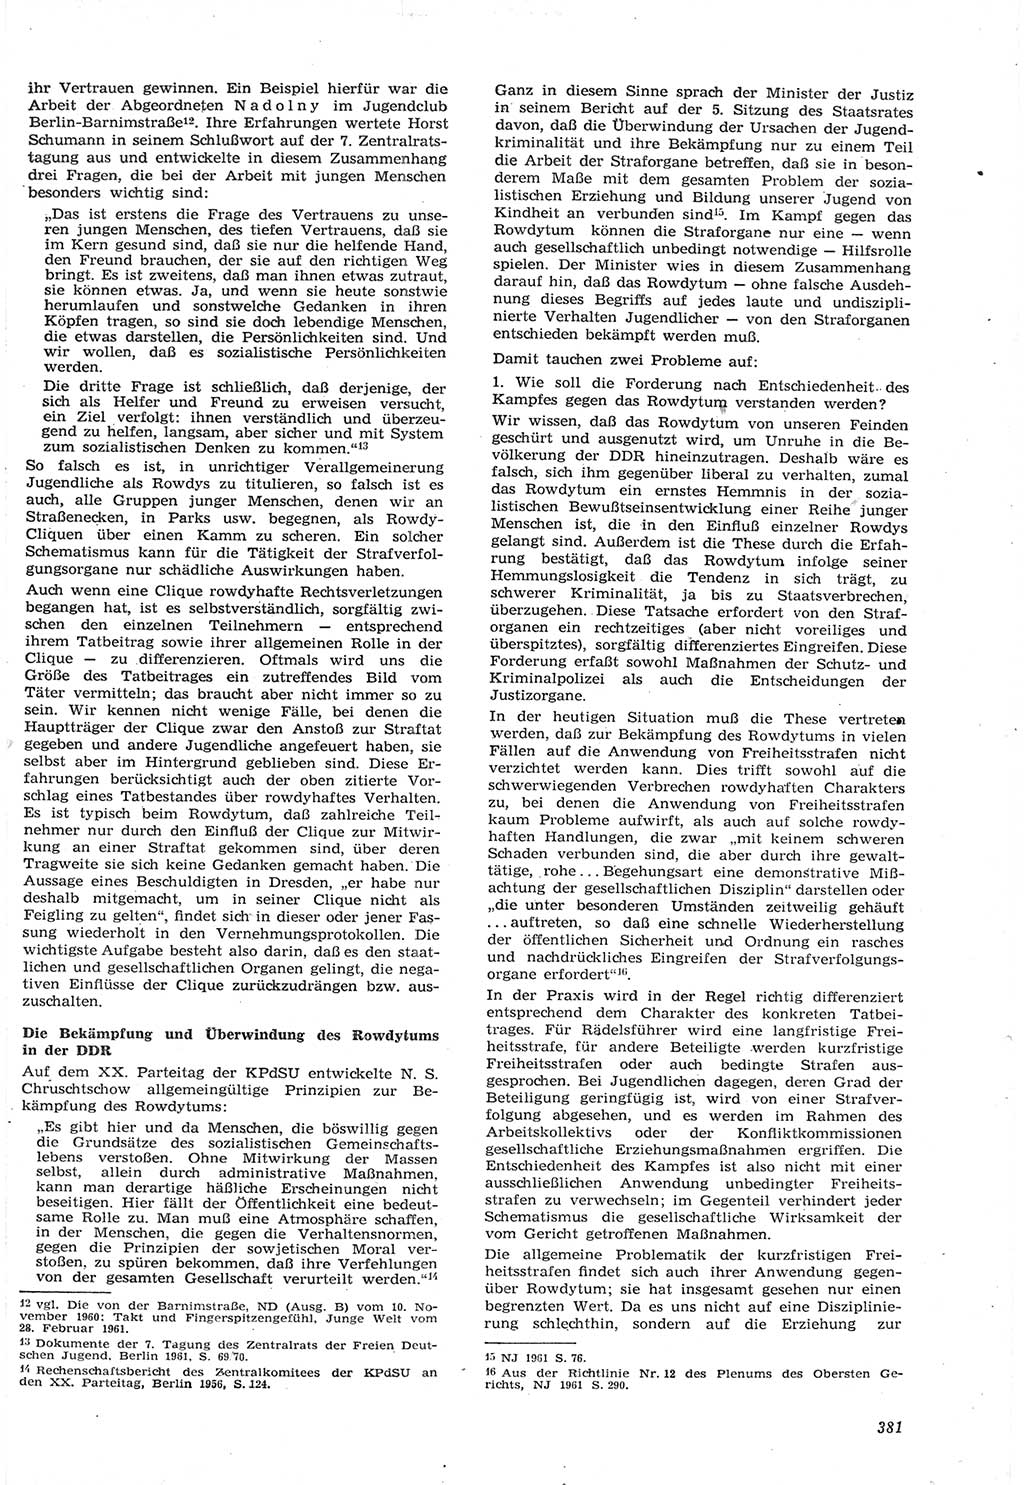 Neue Justiz (NJ), Zeitschrift für Recht und Rechtswissenschaft [Deutsche Demokratische Republik (DDR)], 15. Jahrgang 1961, Seite 381 (NJ DDR 1961, S. 381)